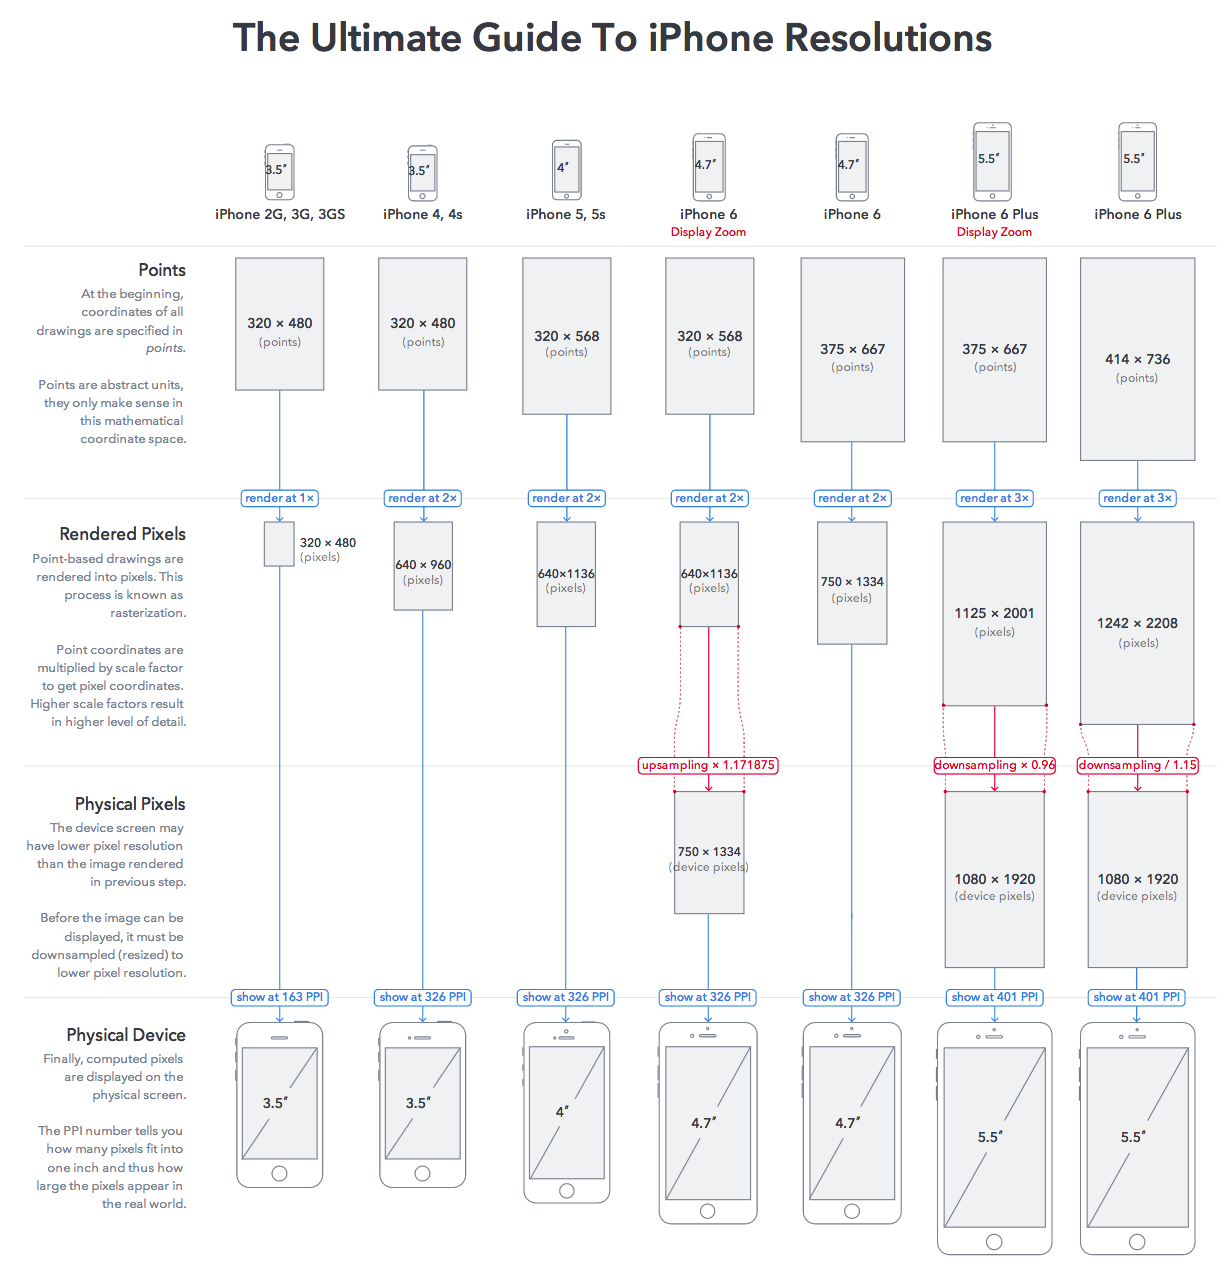 图1 - The Ultimate Guide To iPhone Resolutions